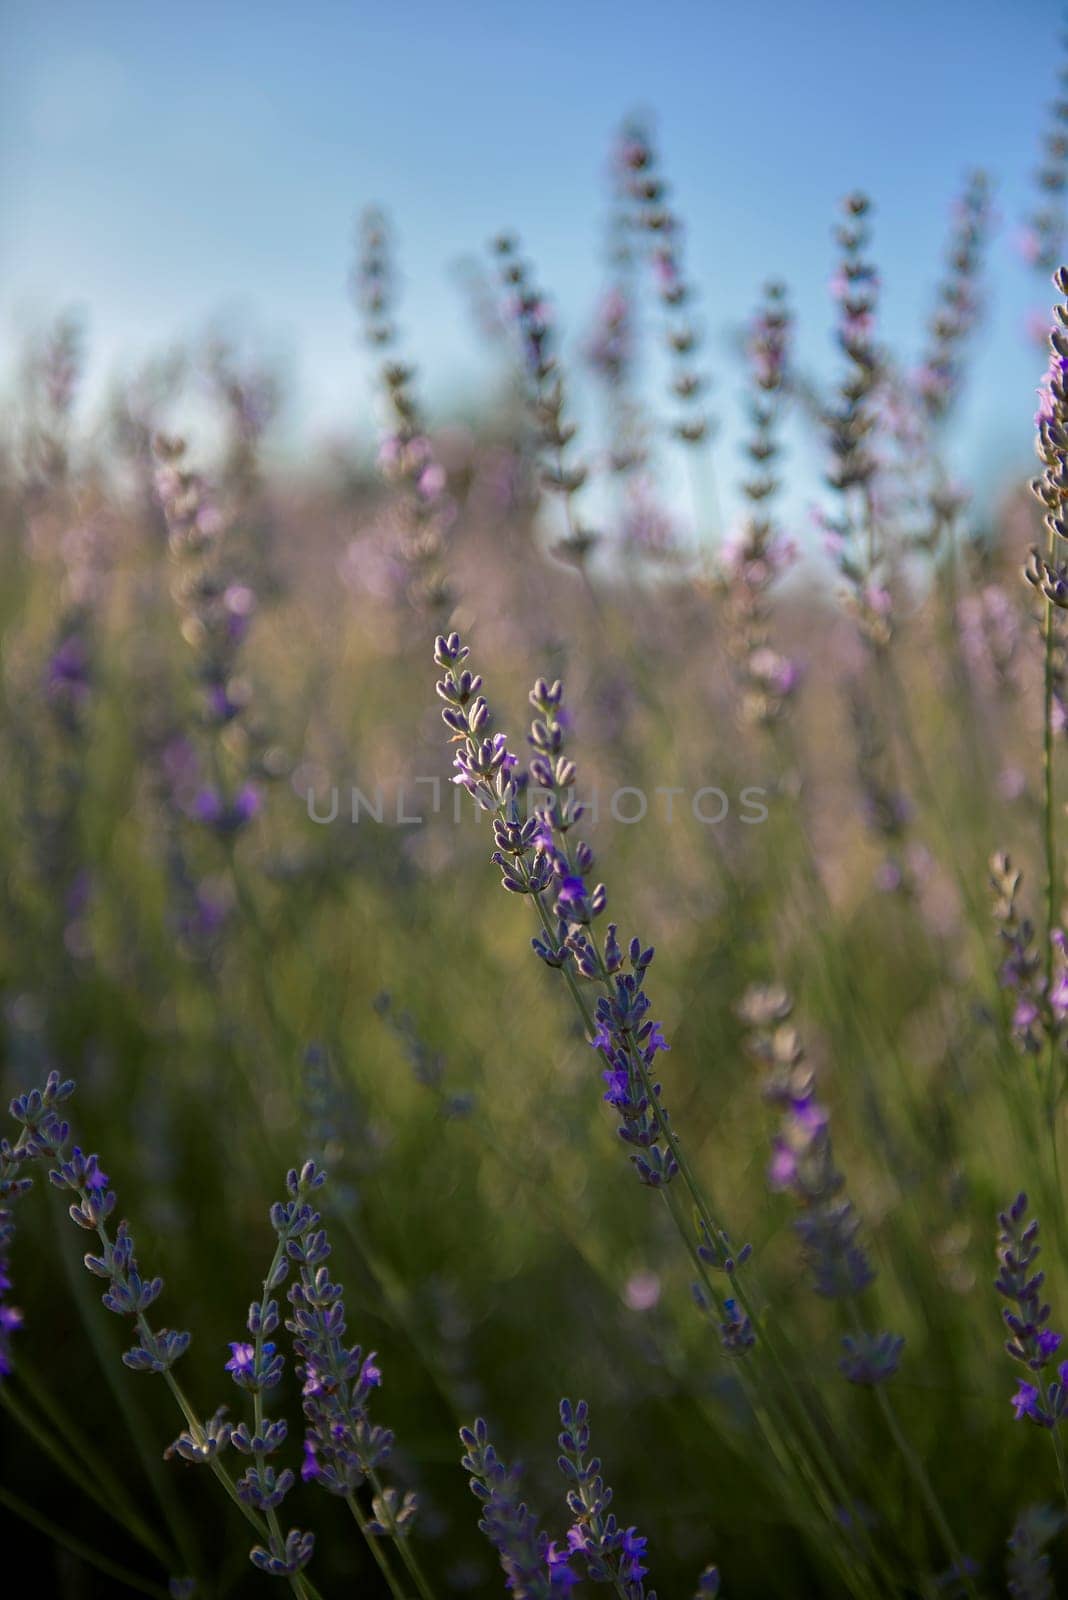 Detail of lavender plant leaves, macro detail by raul_ruiz